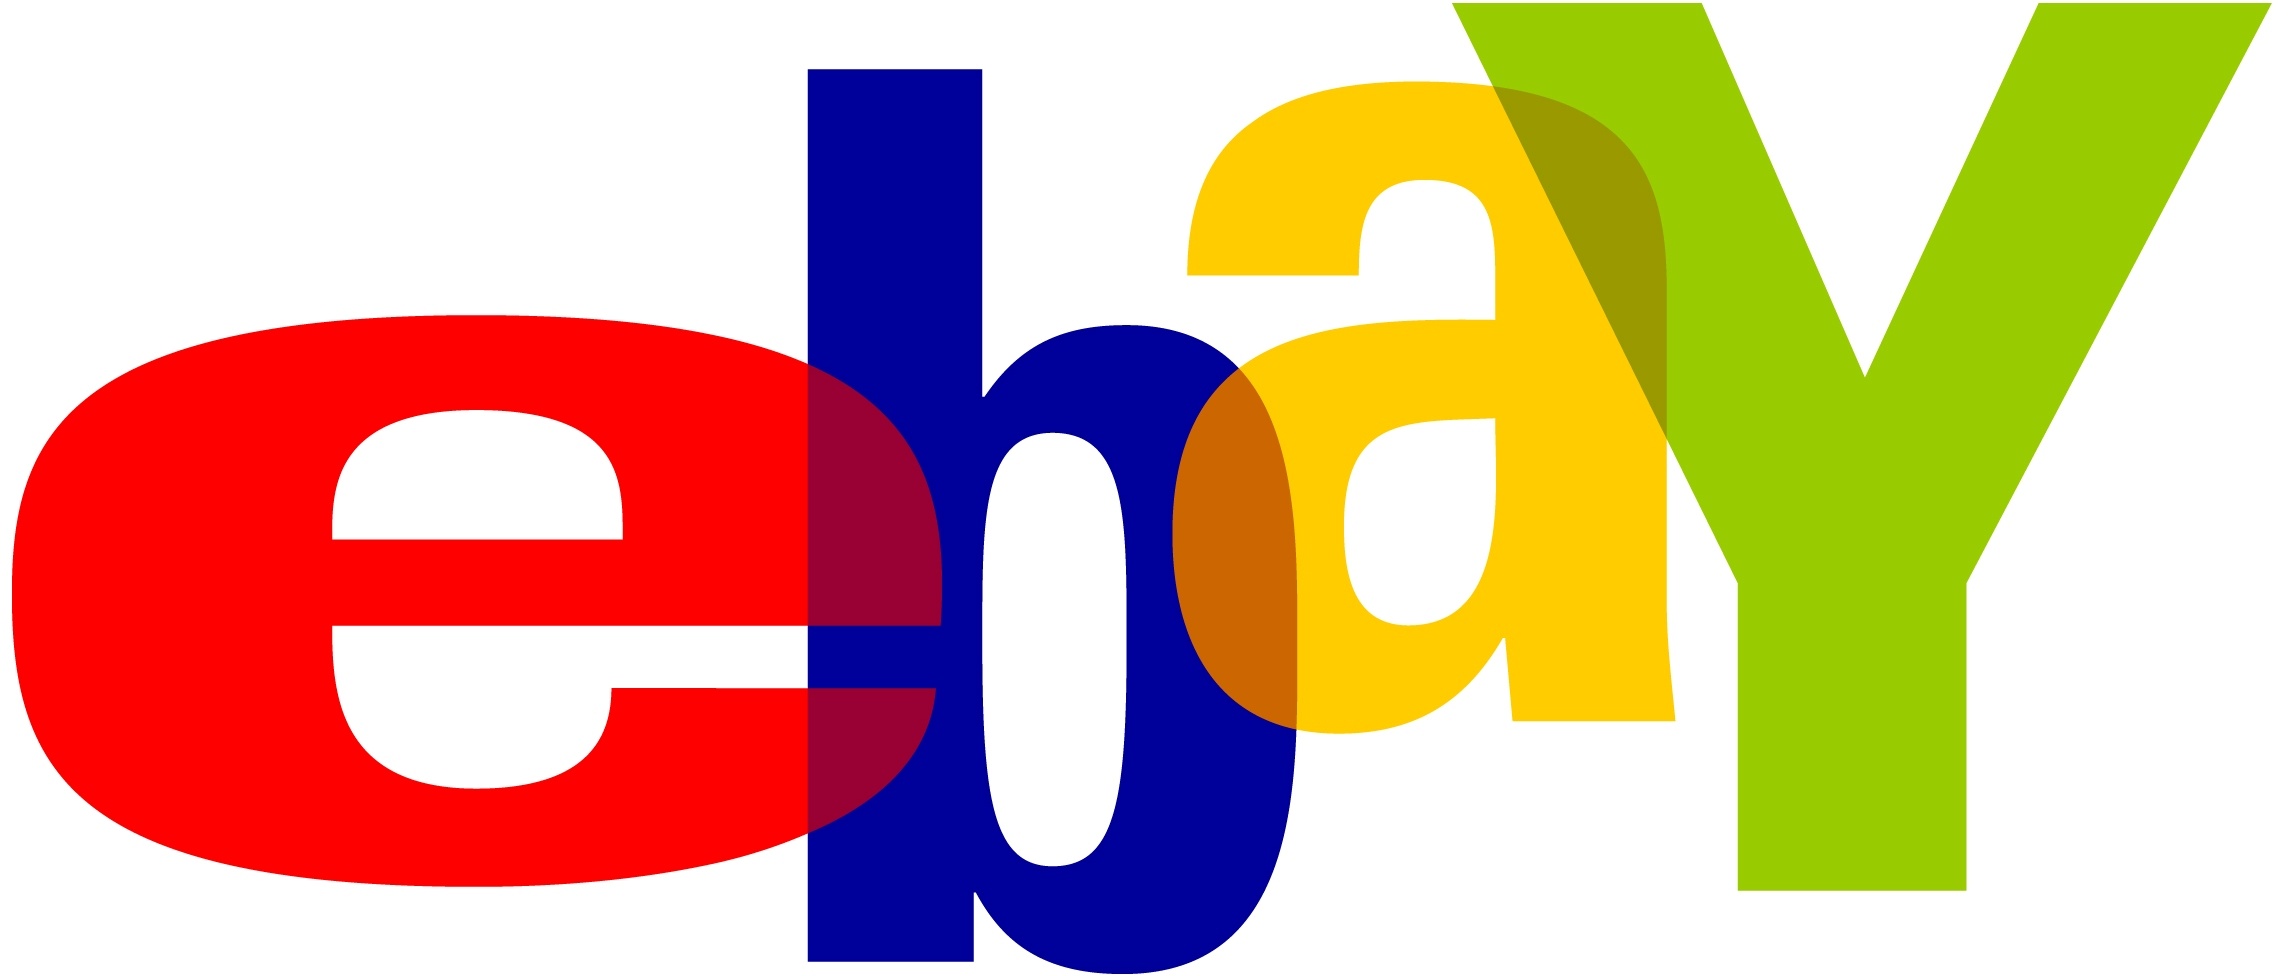 Logo do eBay